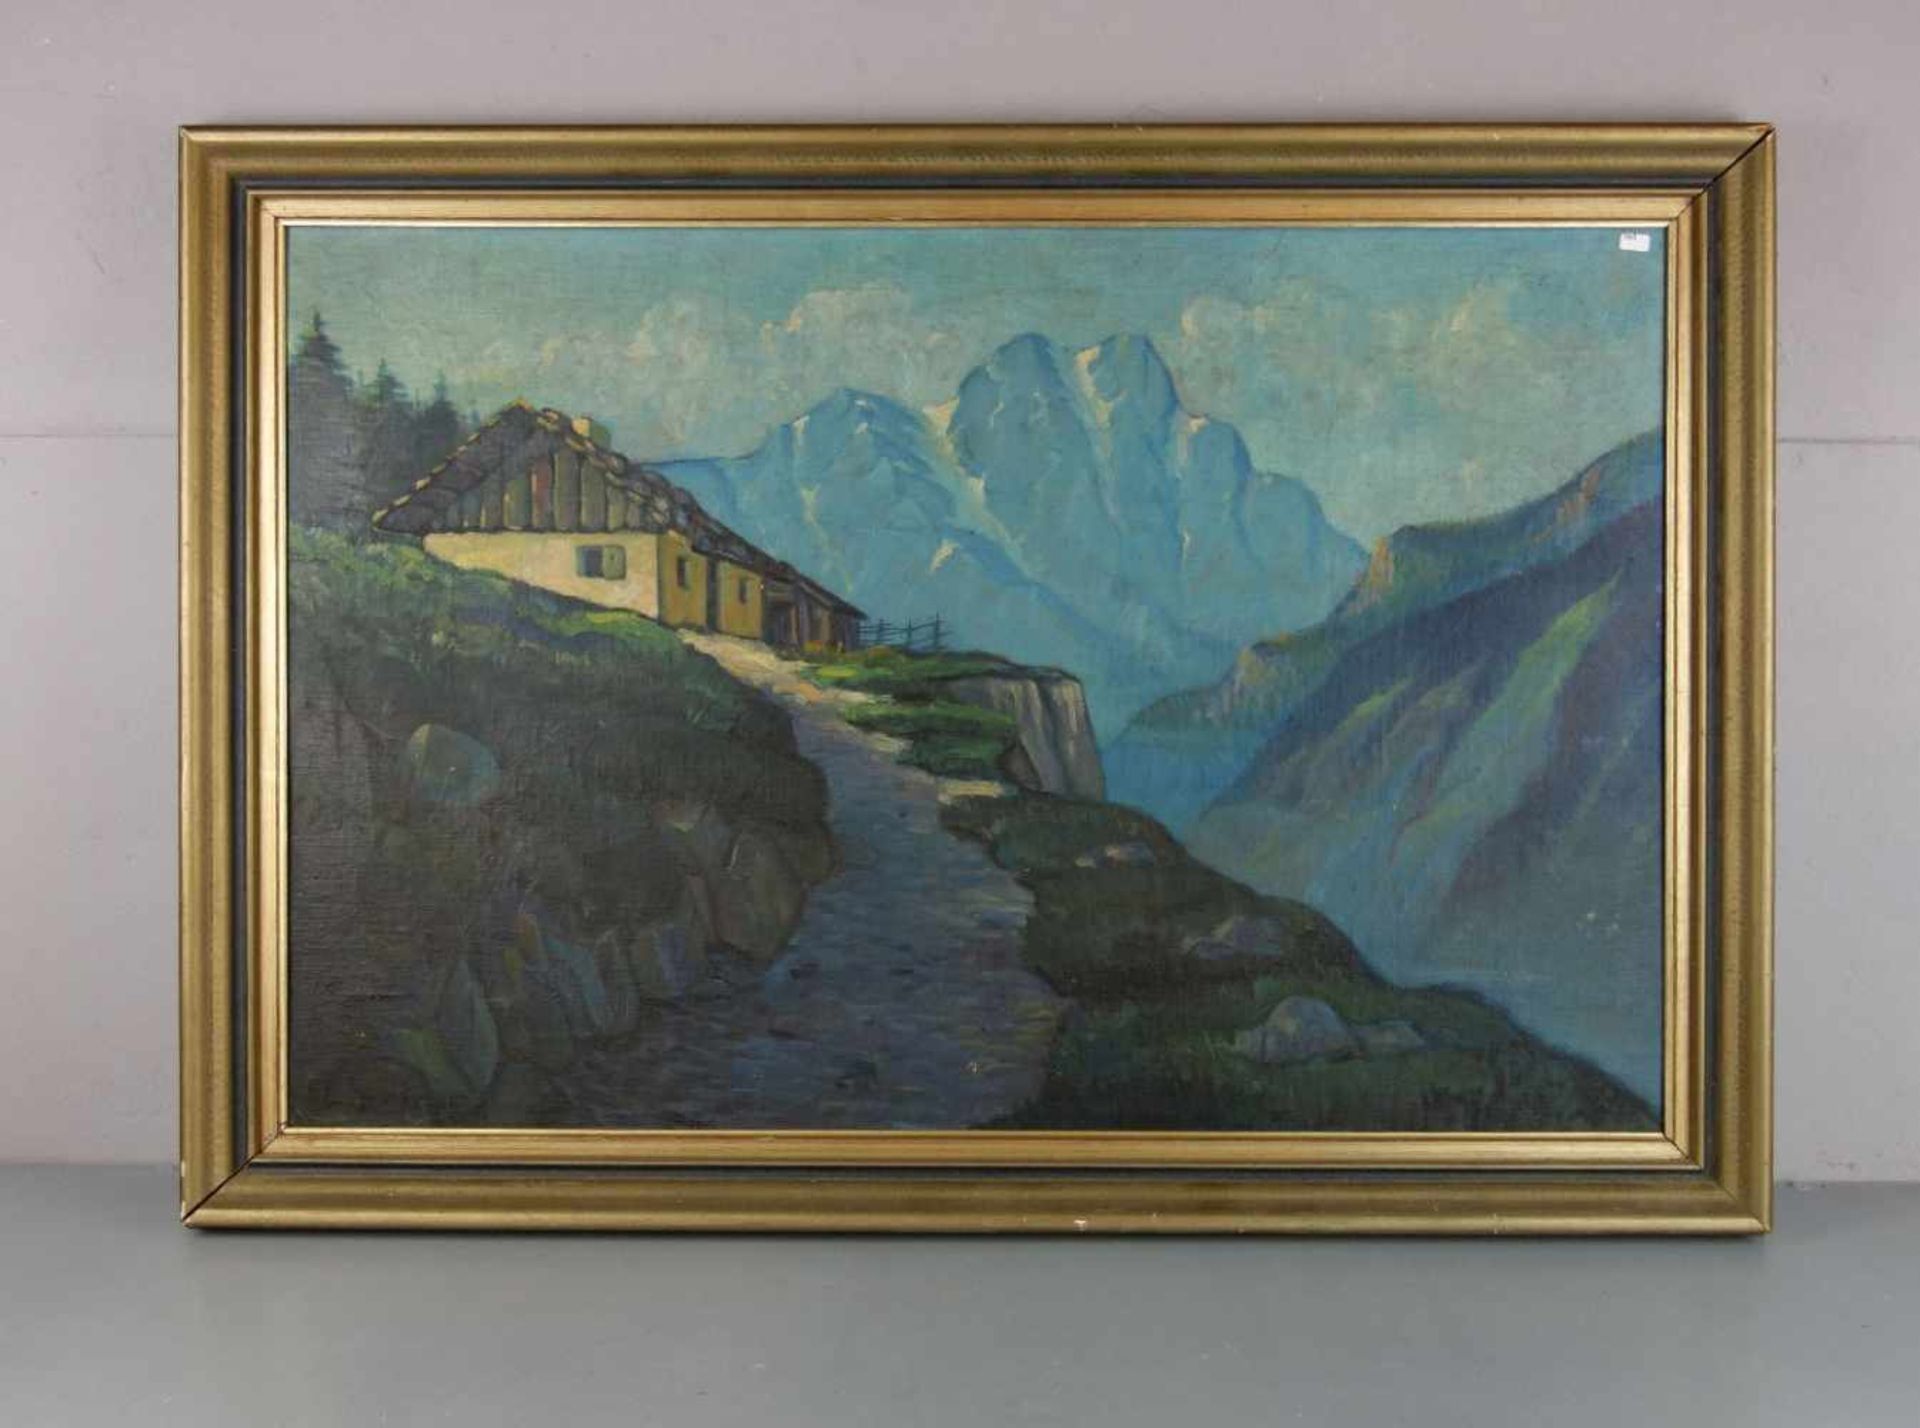 STAINER, L. (dt. Landschaftsmaler des 19./20. Jh.), Gemälde / painting: "Hof im Hochgebirge", Öl auf